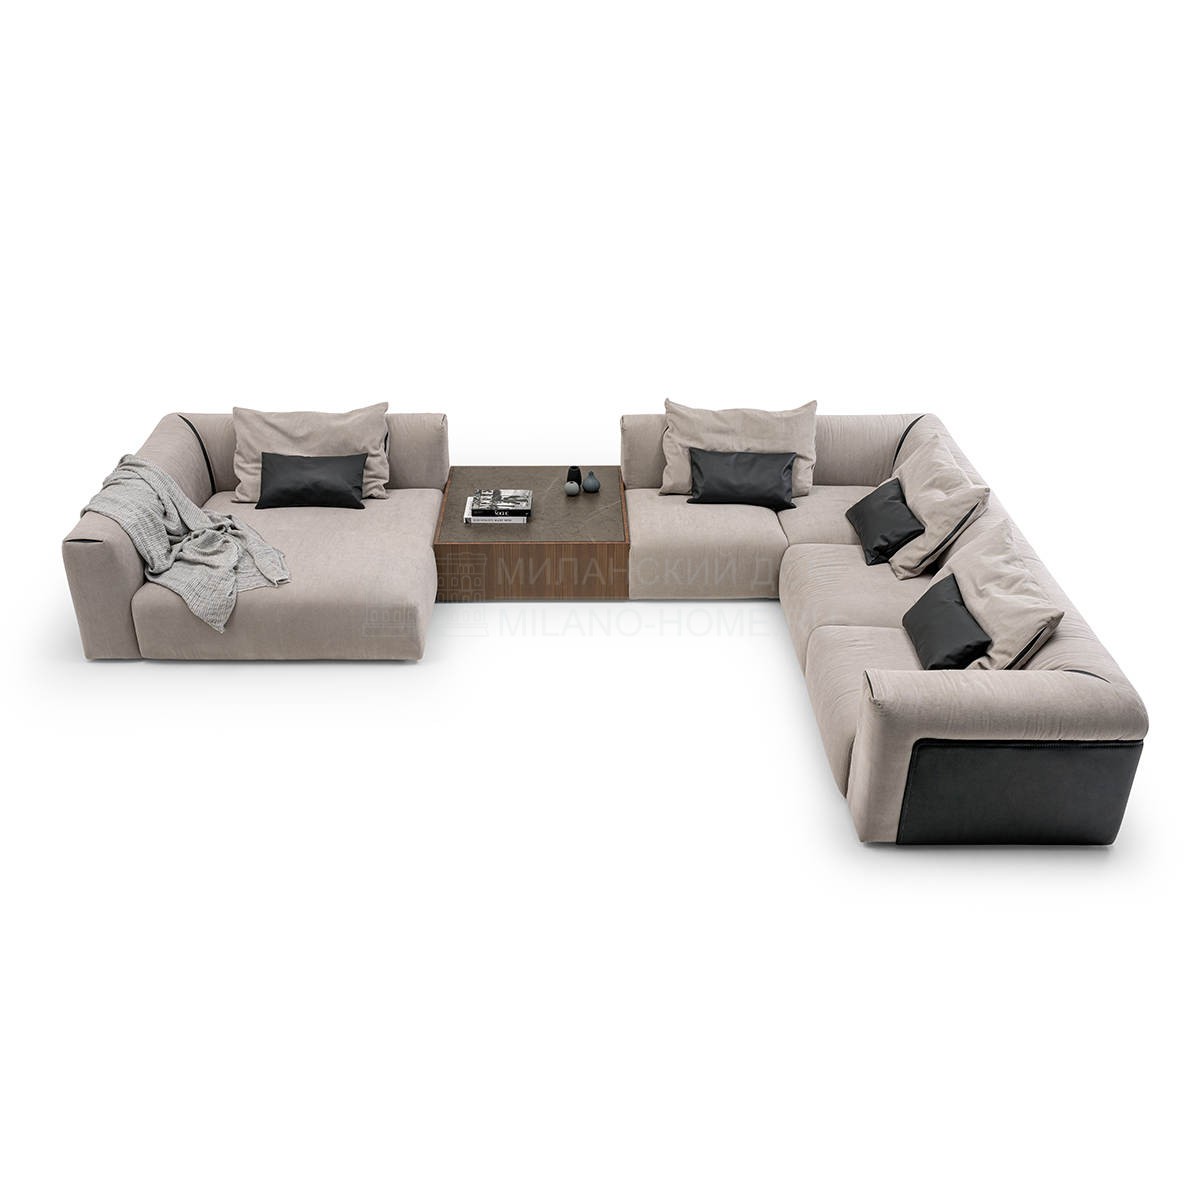 Модульный диван Soul modular sofa из Италии фабрики TURRI